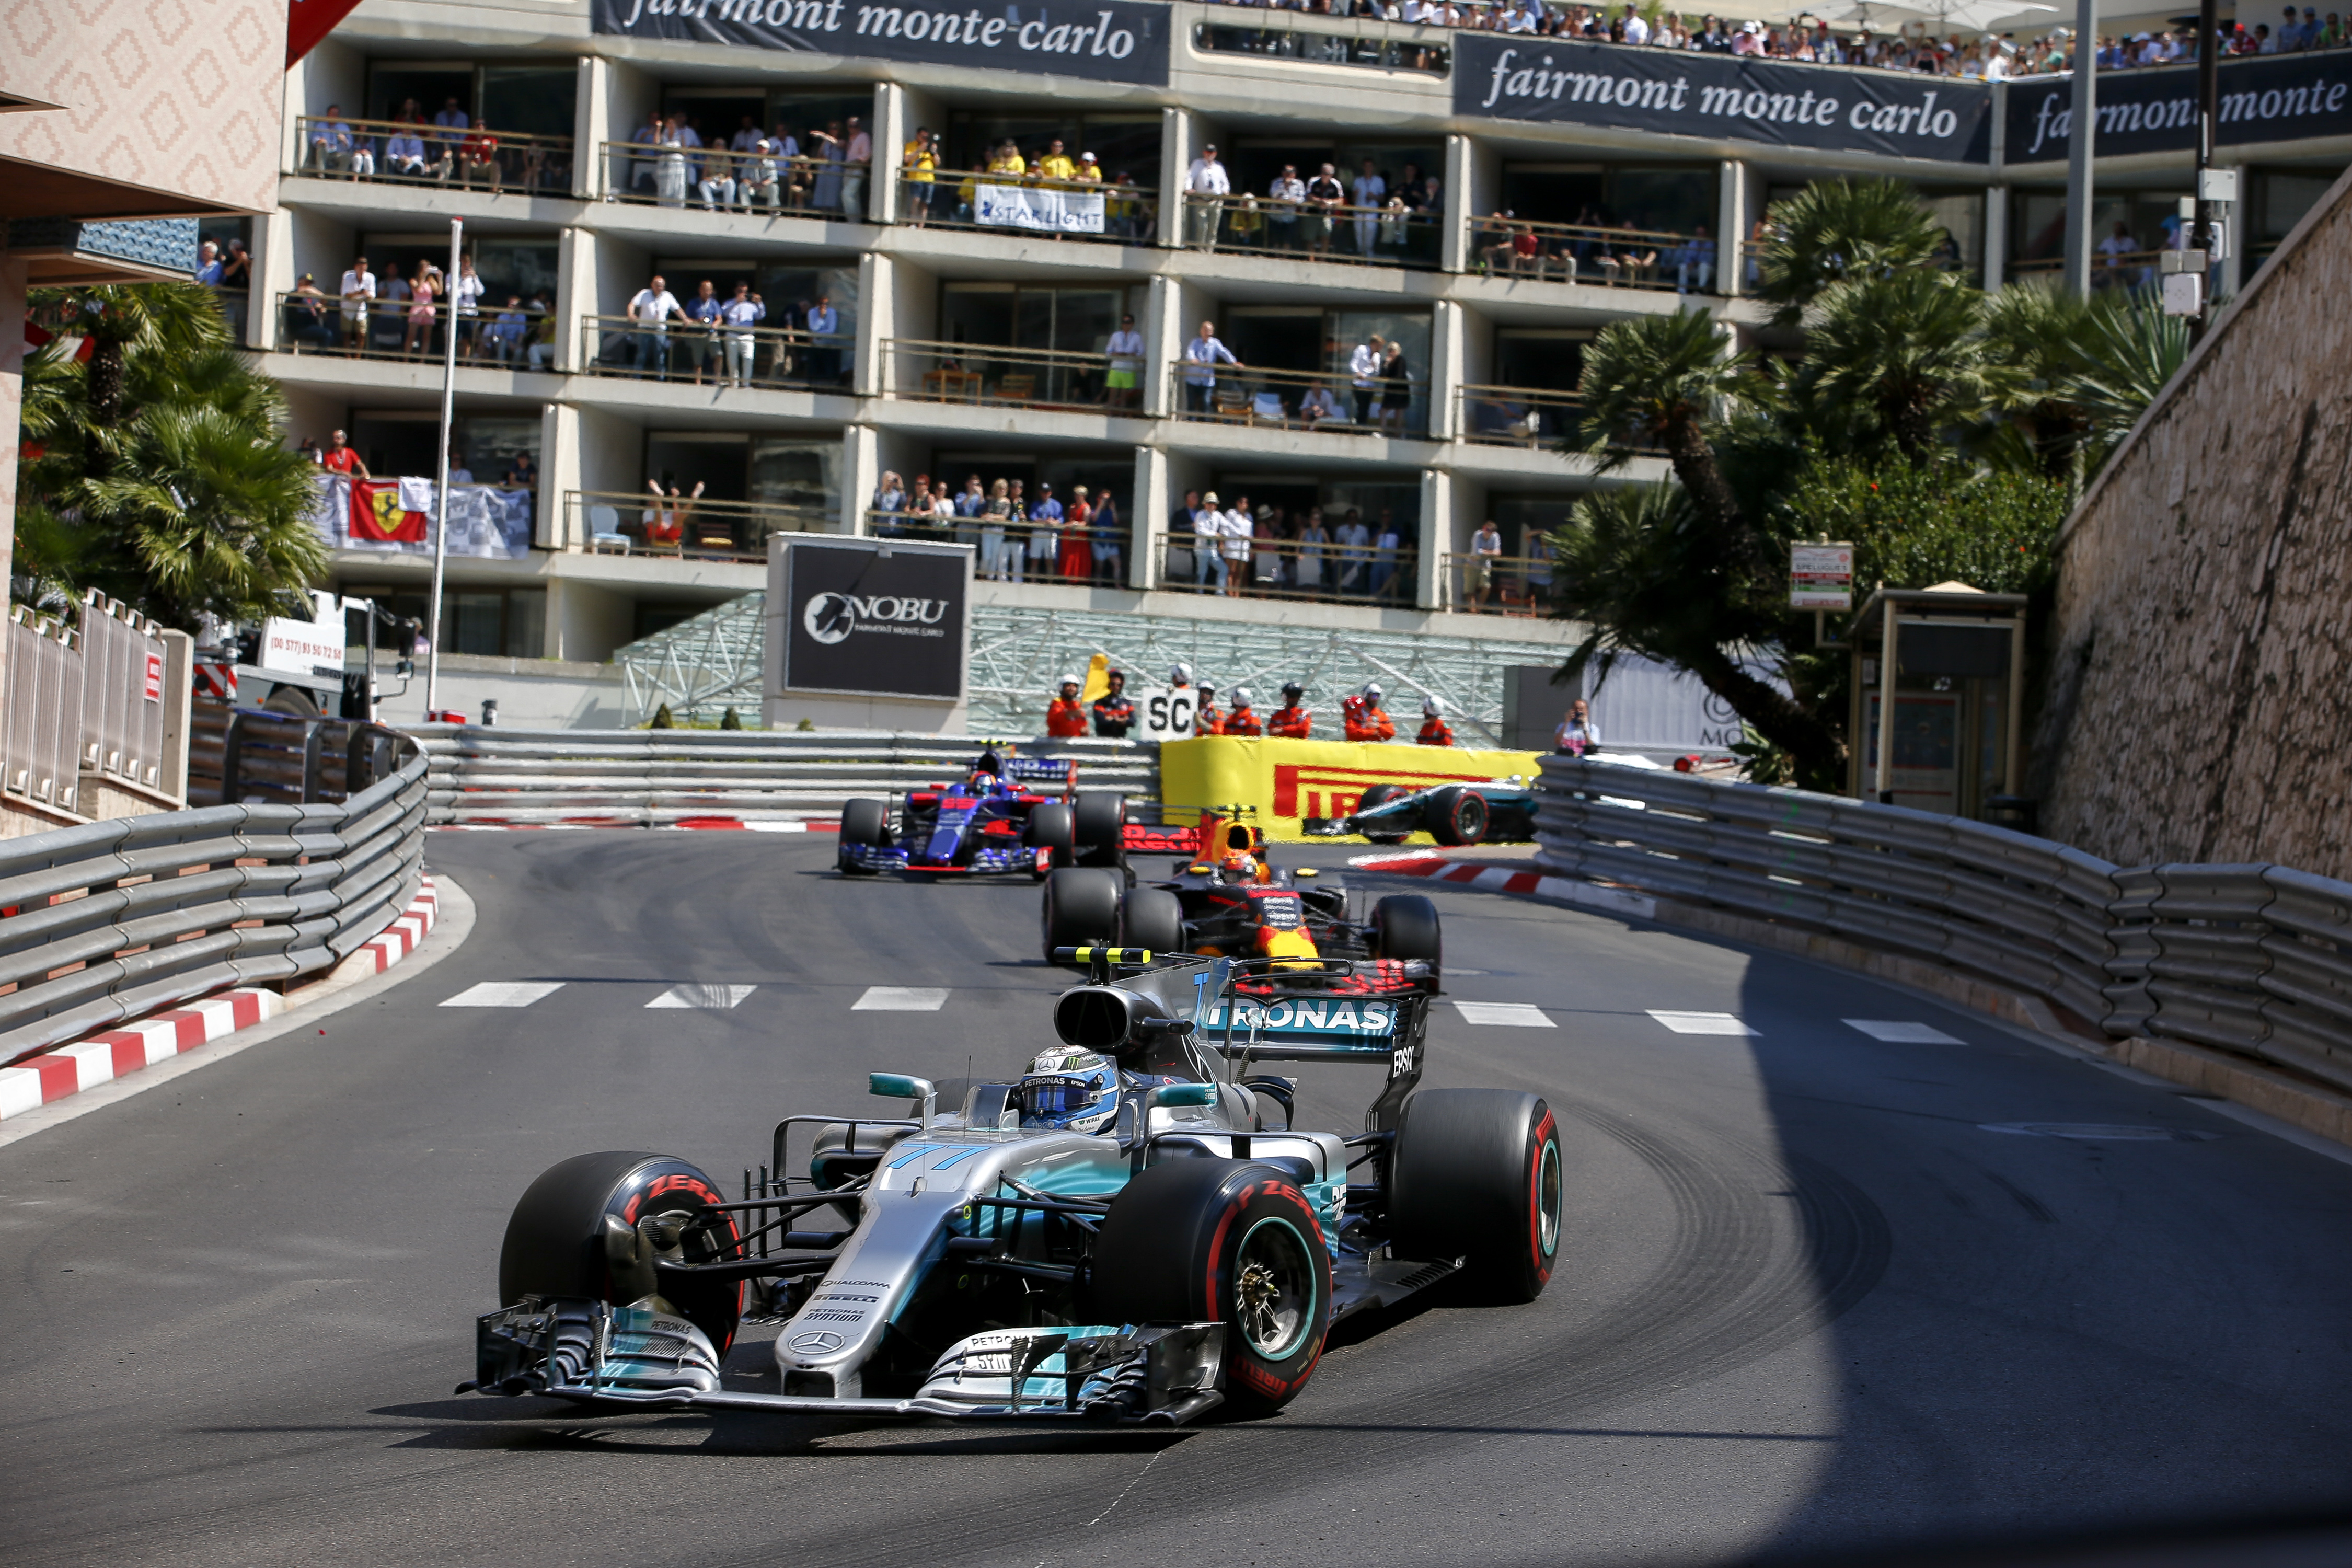 F1 2018 Monaco Grand Prix | Federation Internationale de l'Automobile